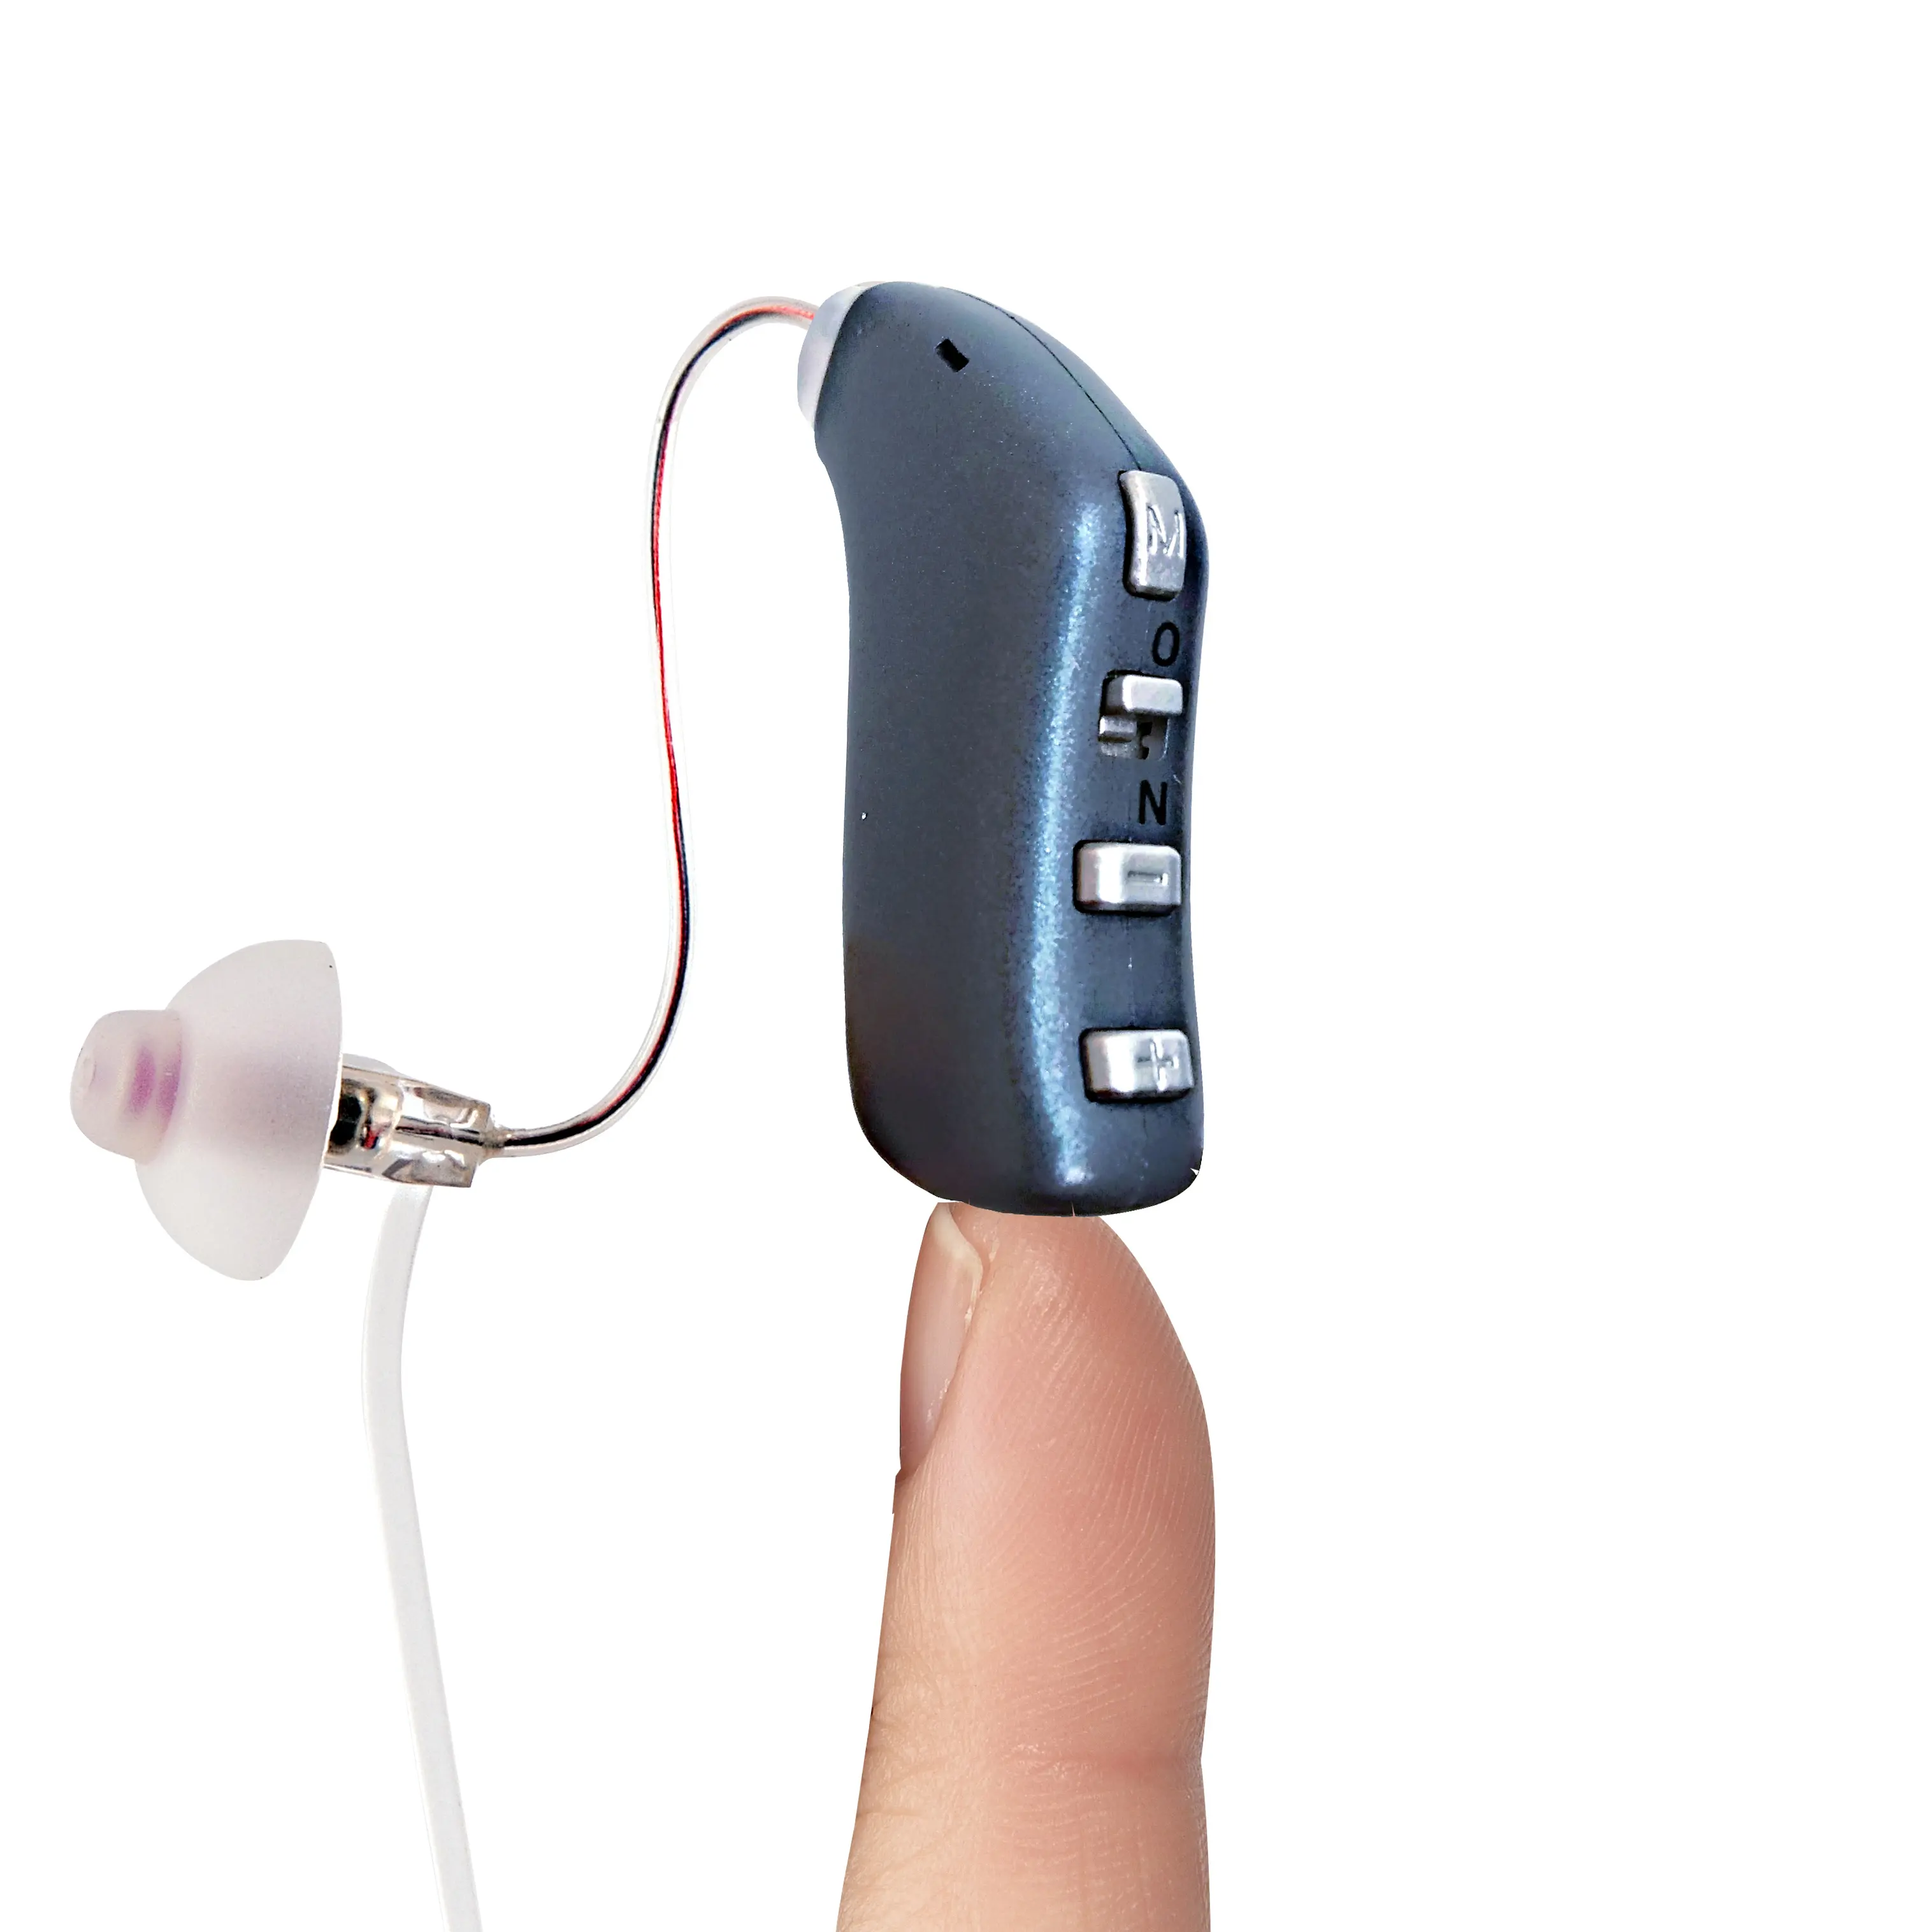 منتجات جديدة 2021 فريدة من نوعها Earsmate السمع القابلة لإعادة الشحن رقائق أنواع الصمم مستلزمات الرعاية الصحية للسوق اليابان